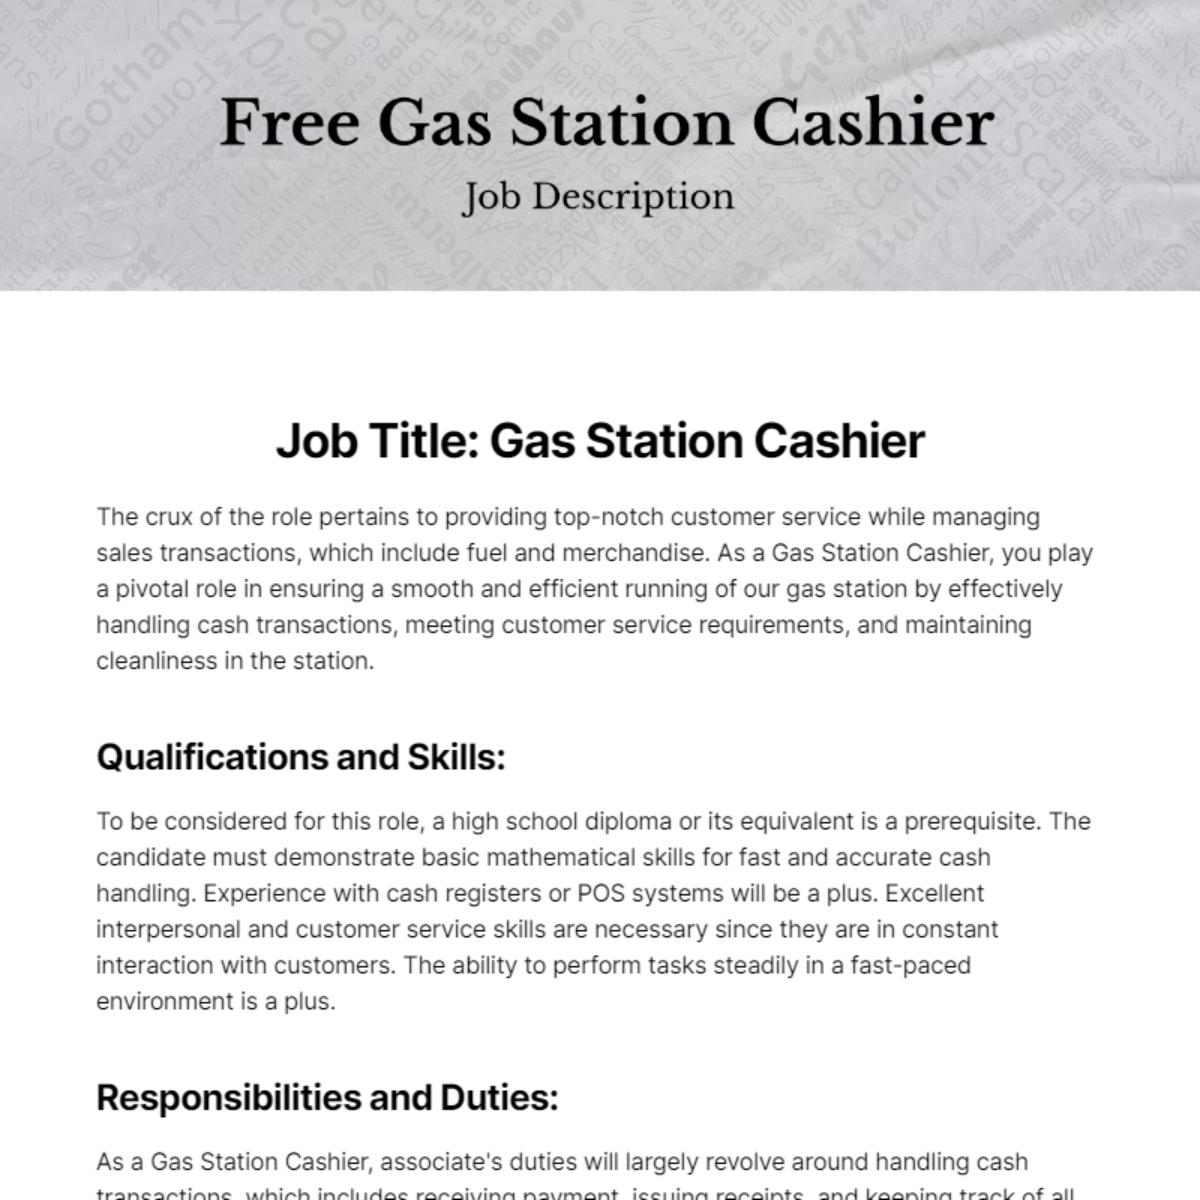 Free Gas Station Cashier Job Description Template